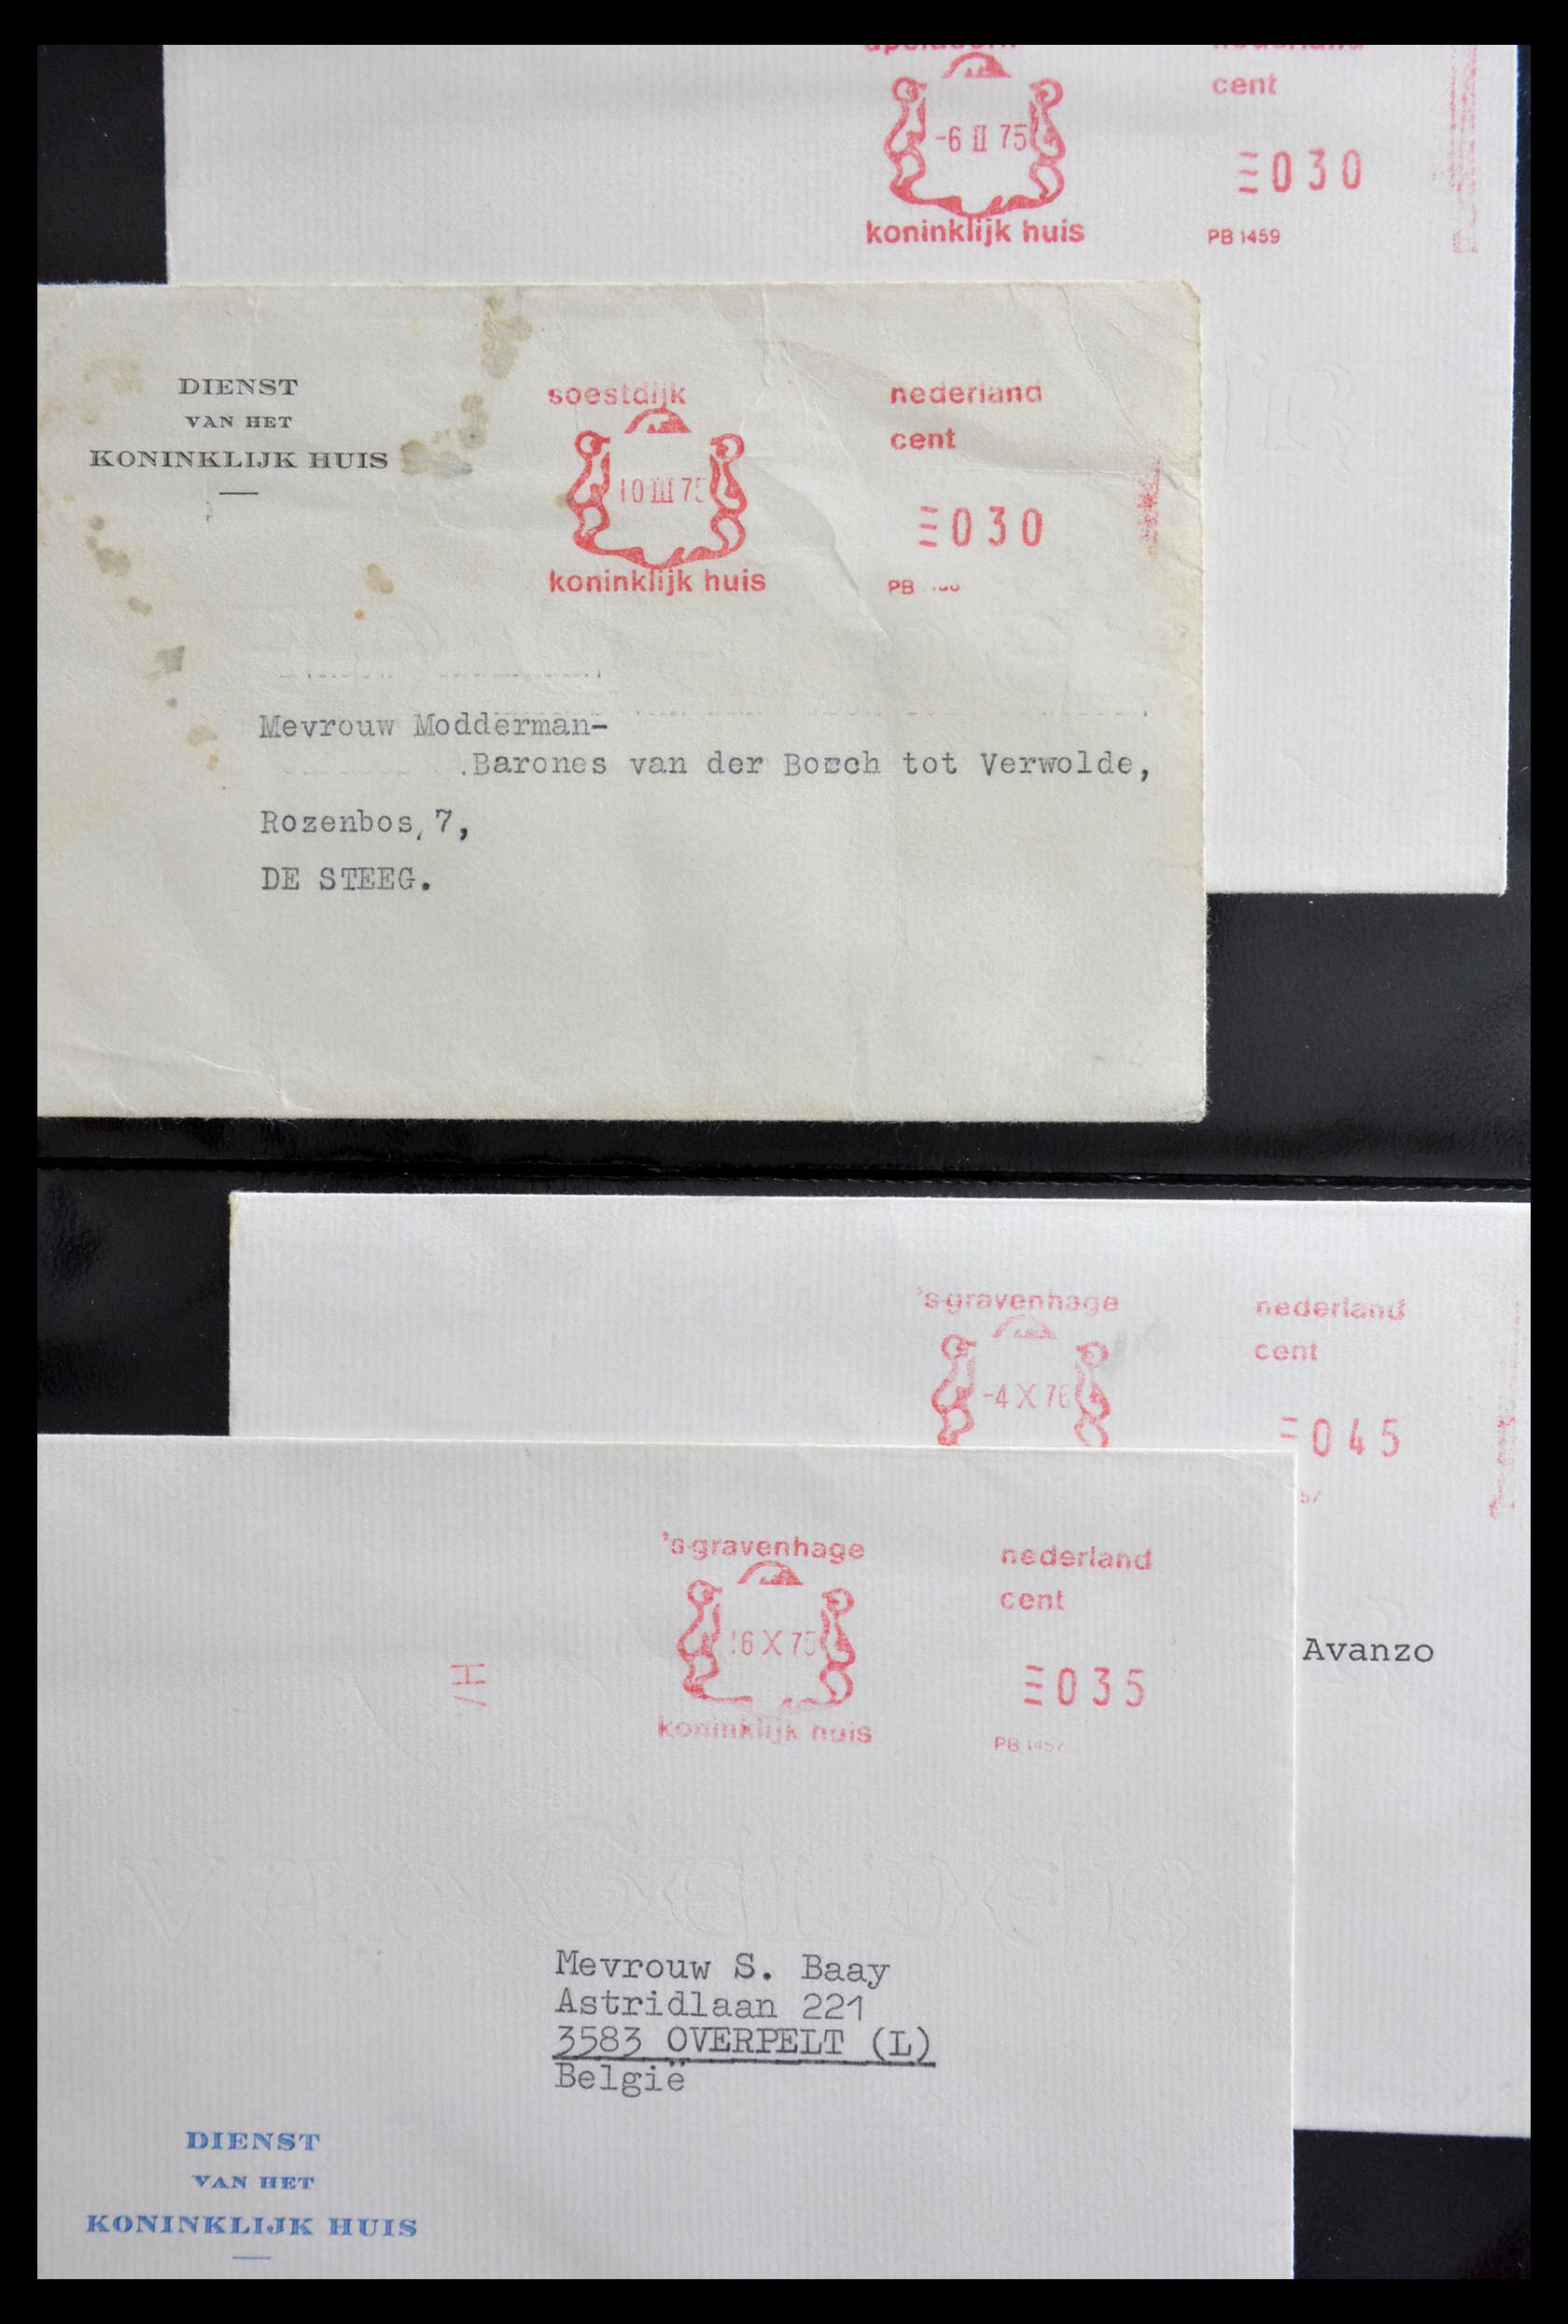 29241 008 - 29241 Nederland brieven koninklijk huis.